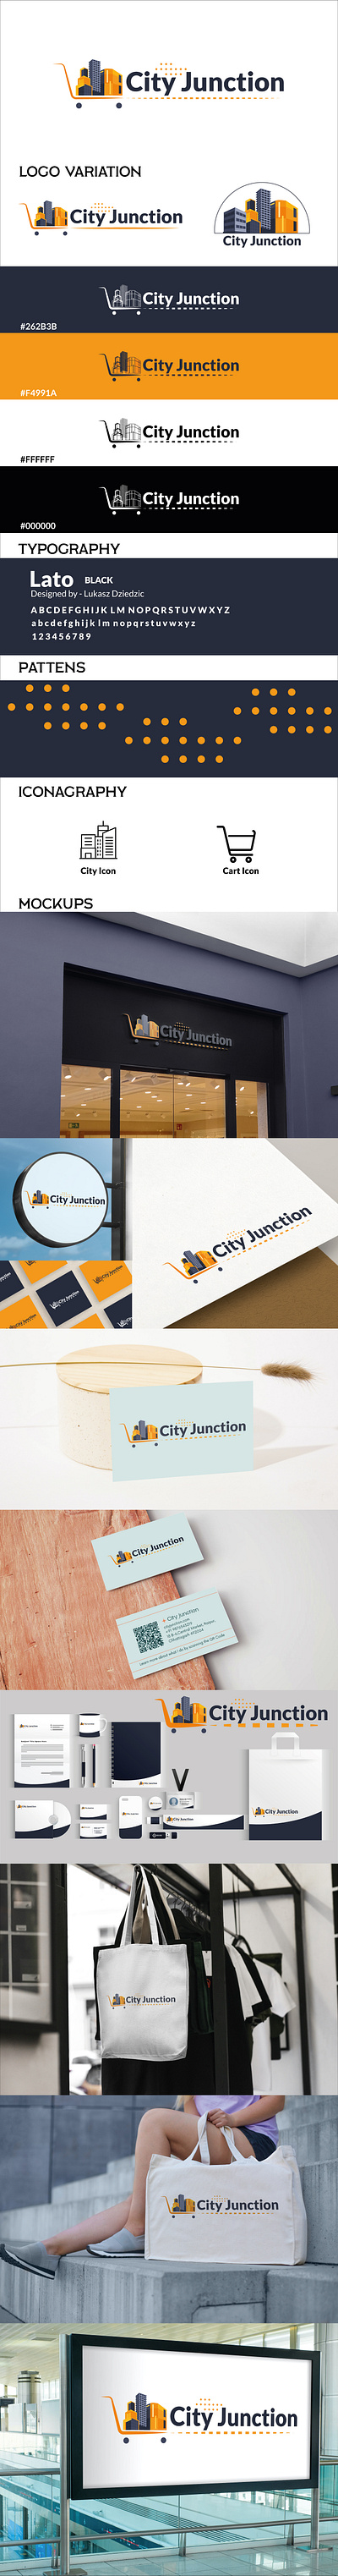 City Junction Logo Design branding creativegraphic creativelogo graphic design logo logodesign